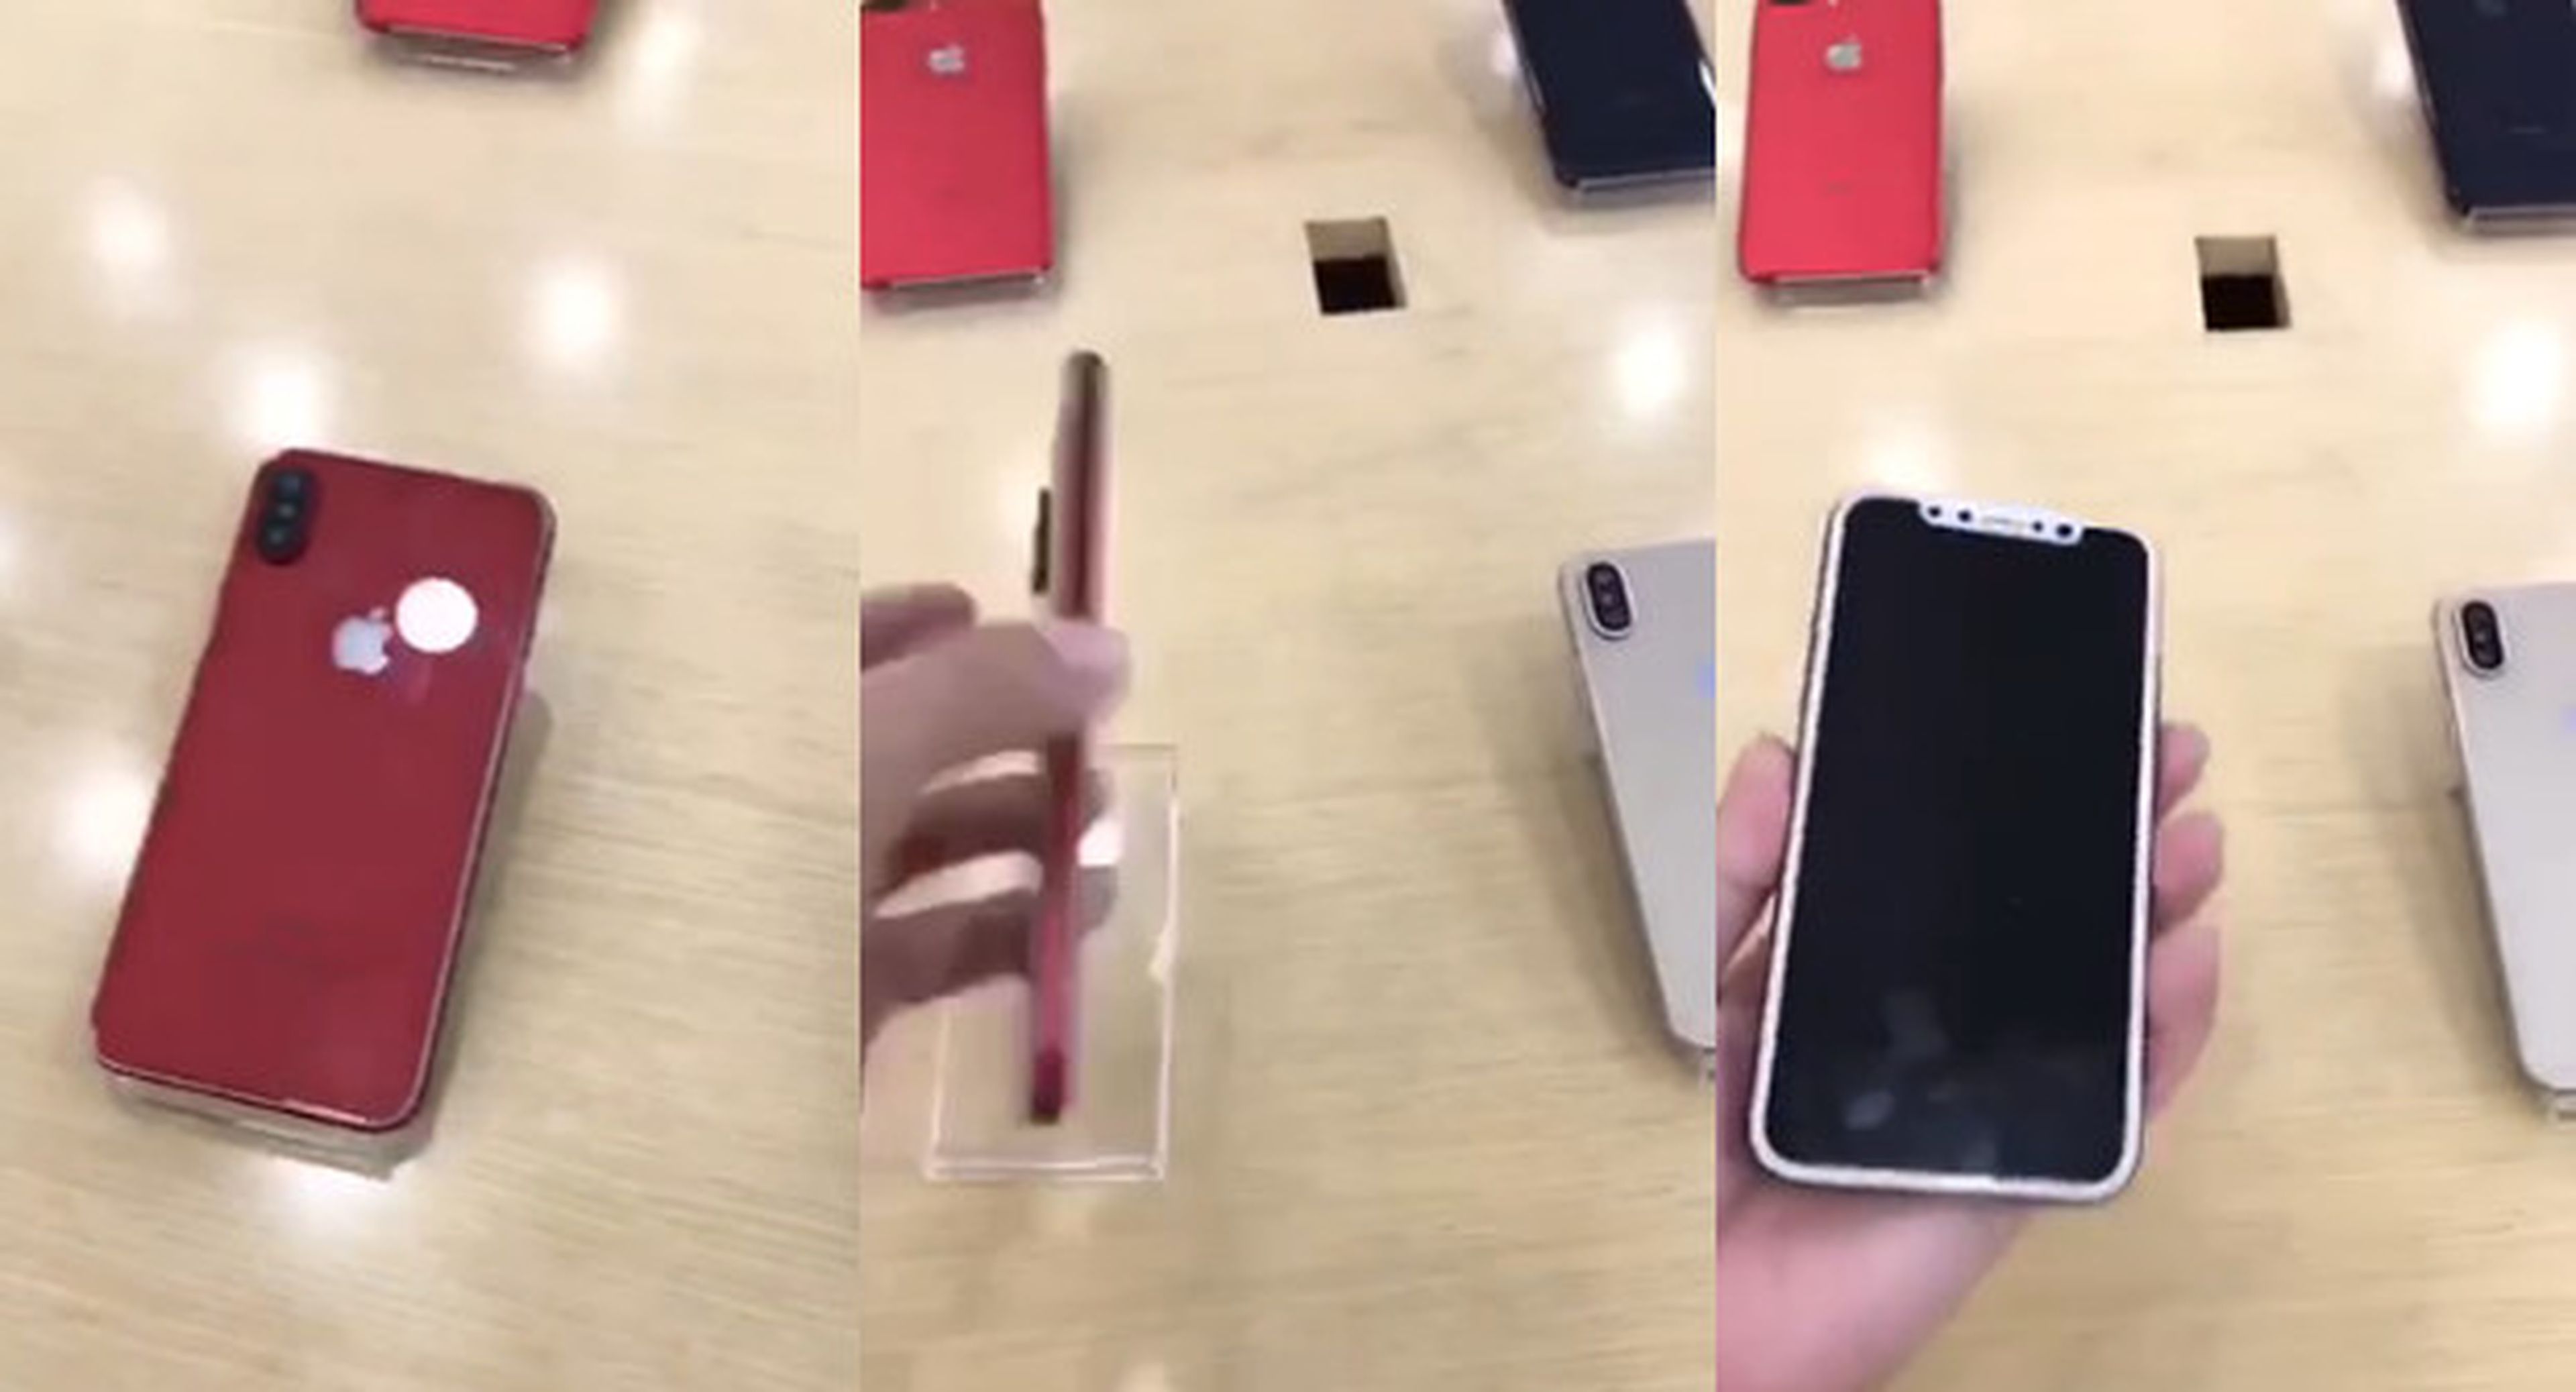 Filtran un vídeo del iPhone 8 en color rojo